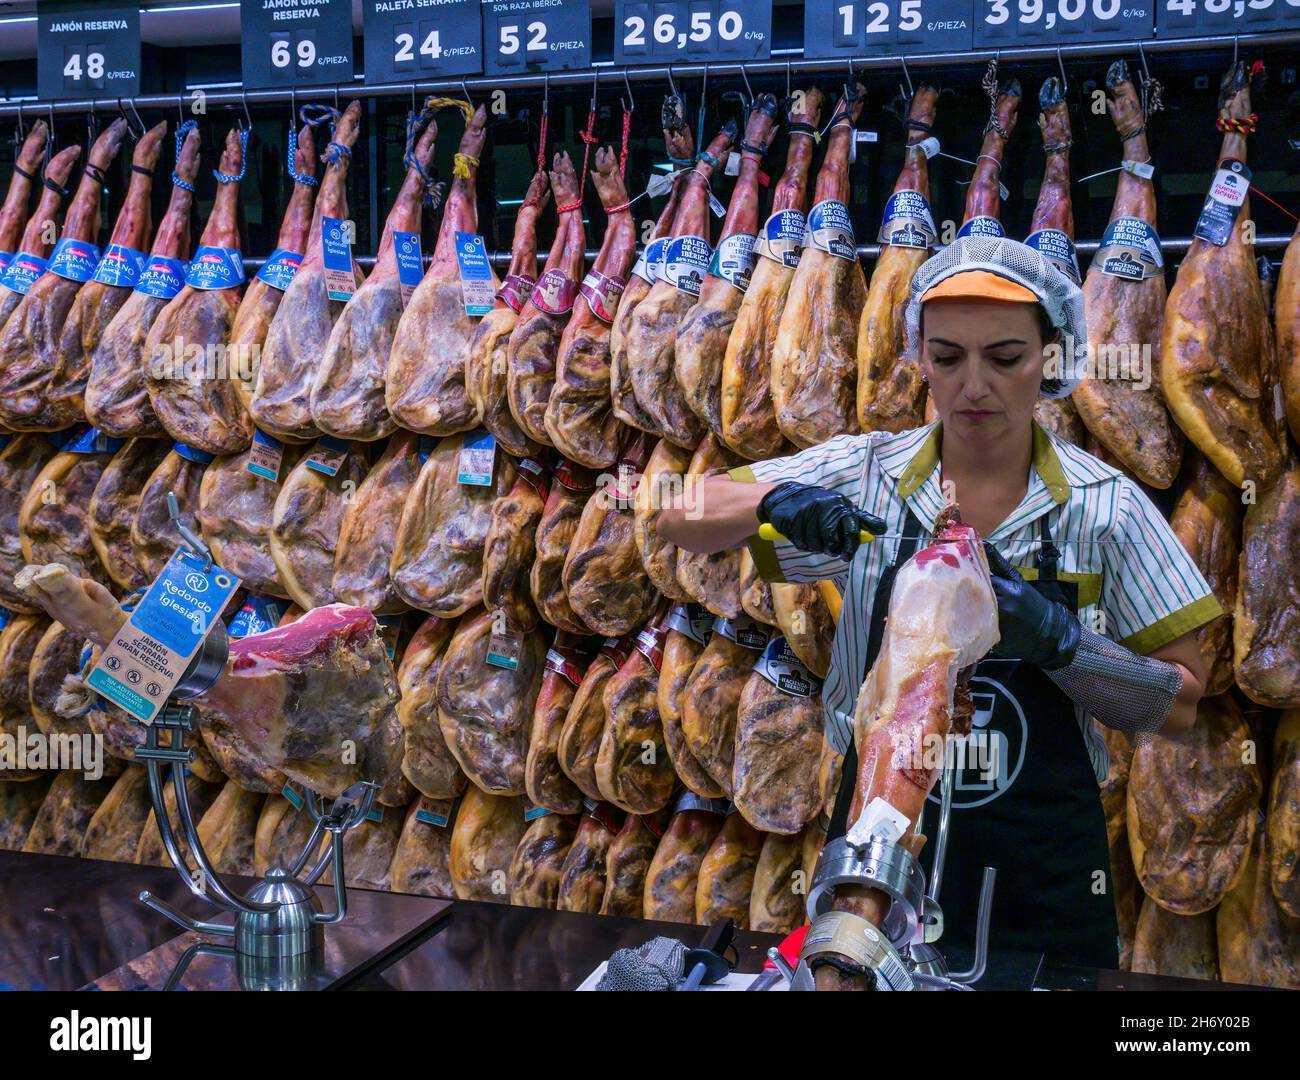 Mujer tallado jamón ibérico español con patas de jamón ahumado colgando en el supermercado, Andalucía, España Foto de stock